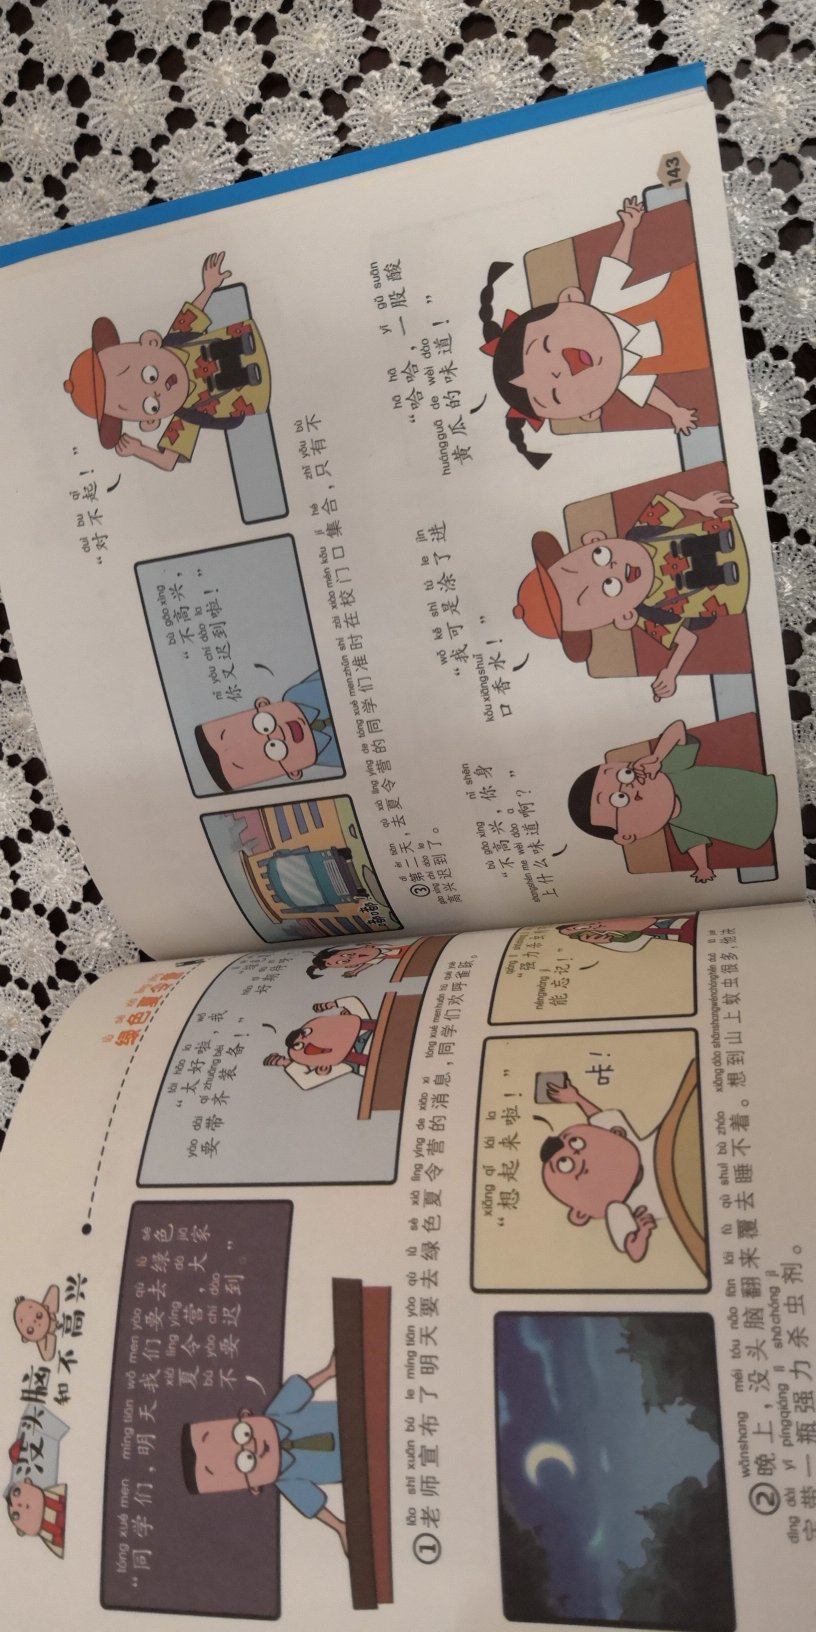 汉语拼音标准的版本，孩子自己就可以阅读。篇章也很多，孩子很喜欢。